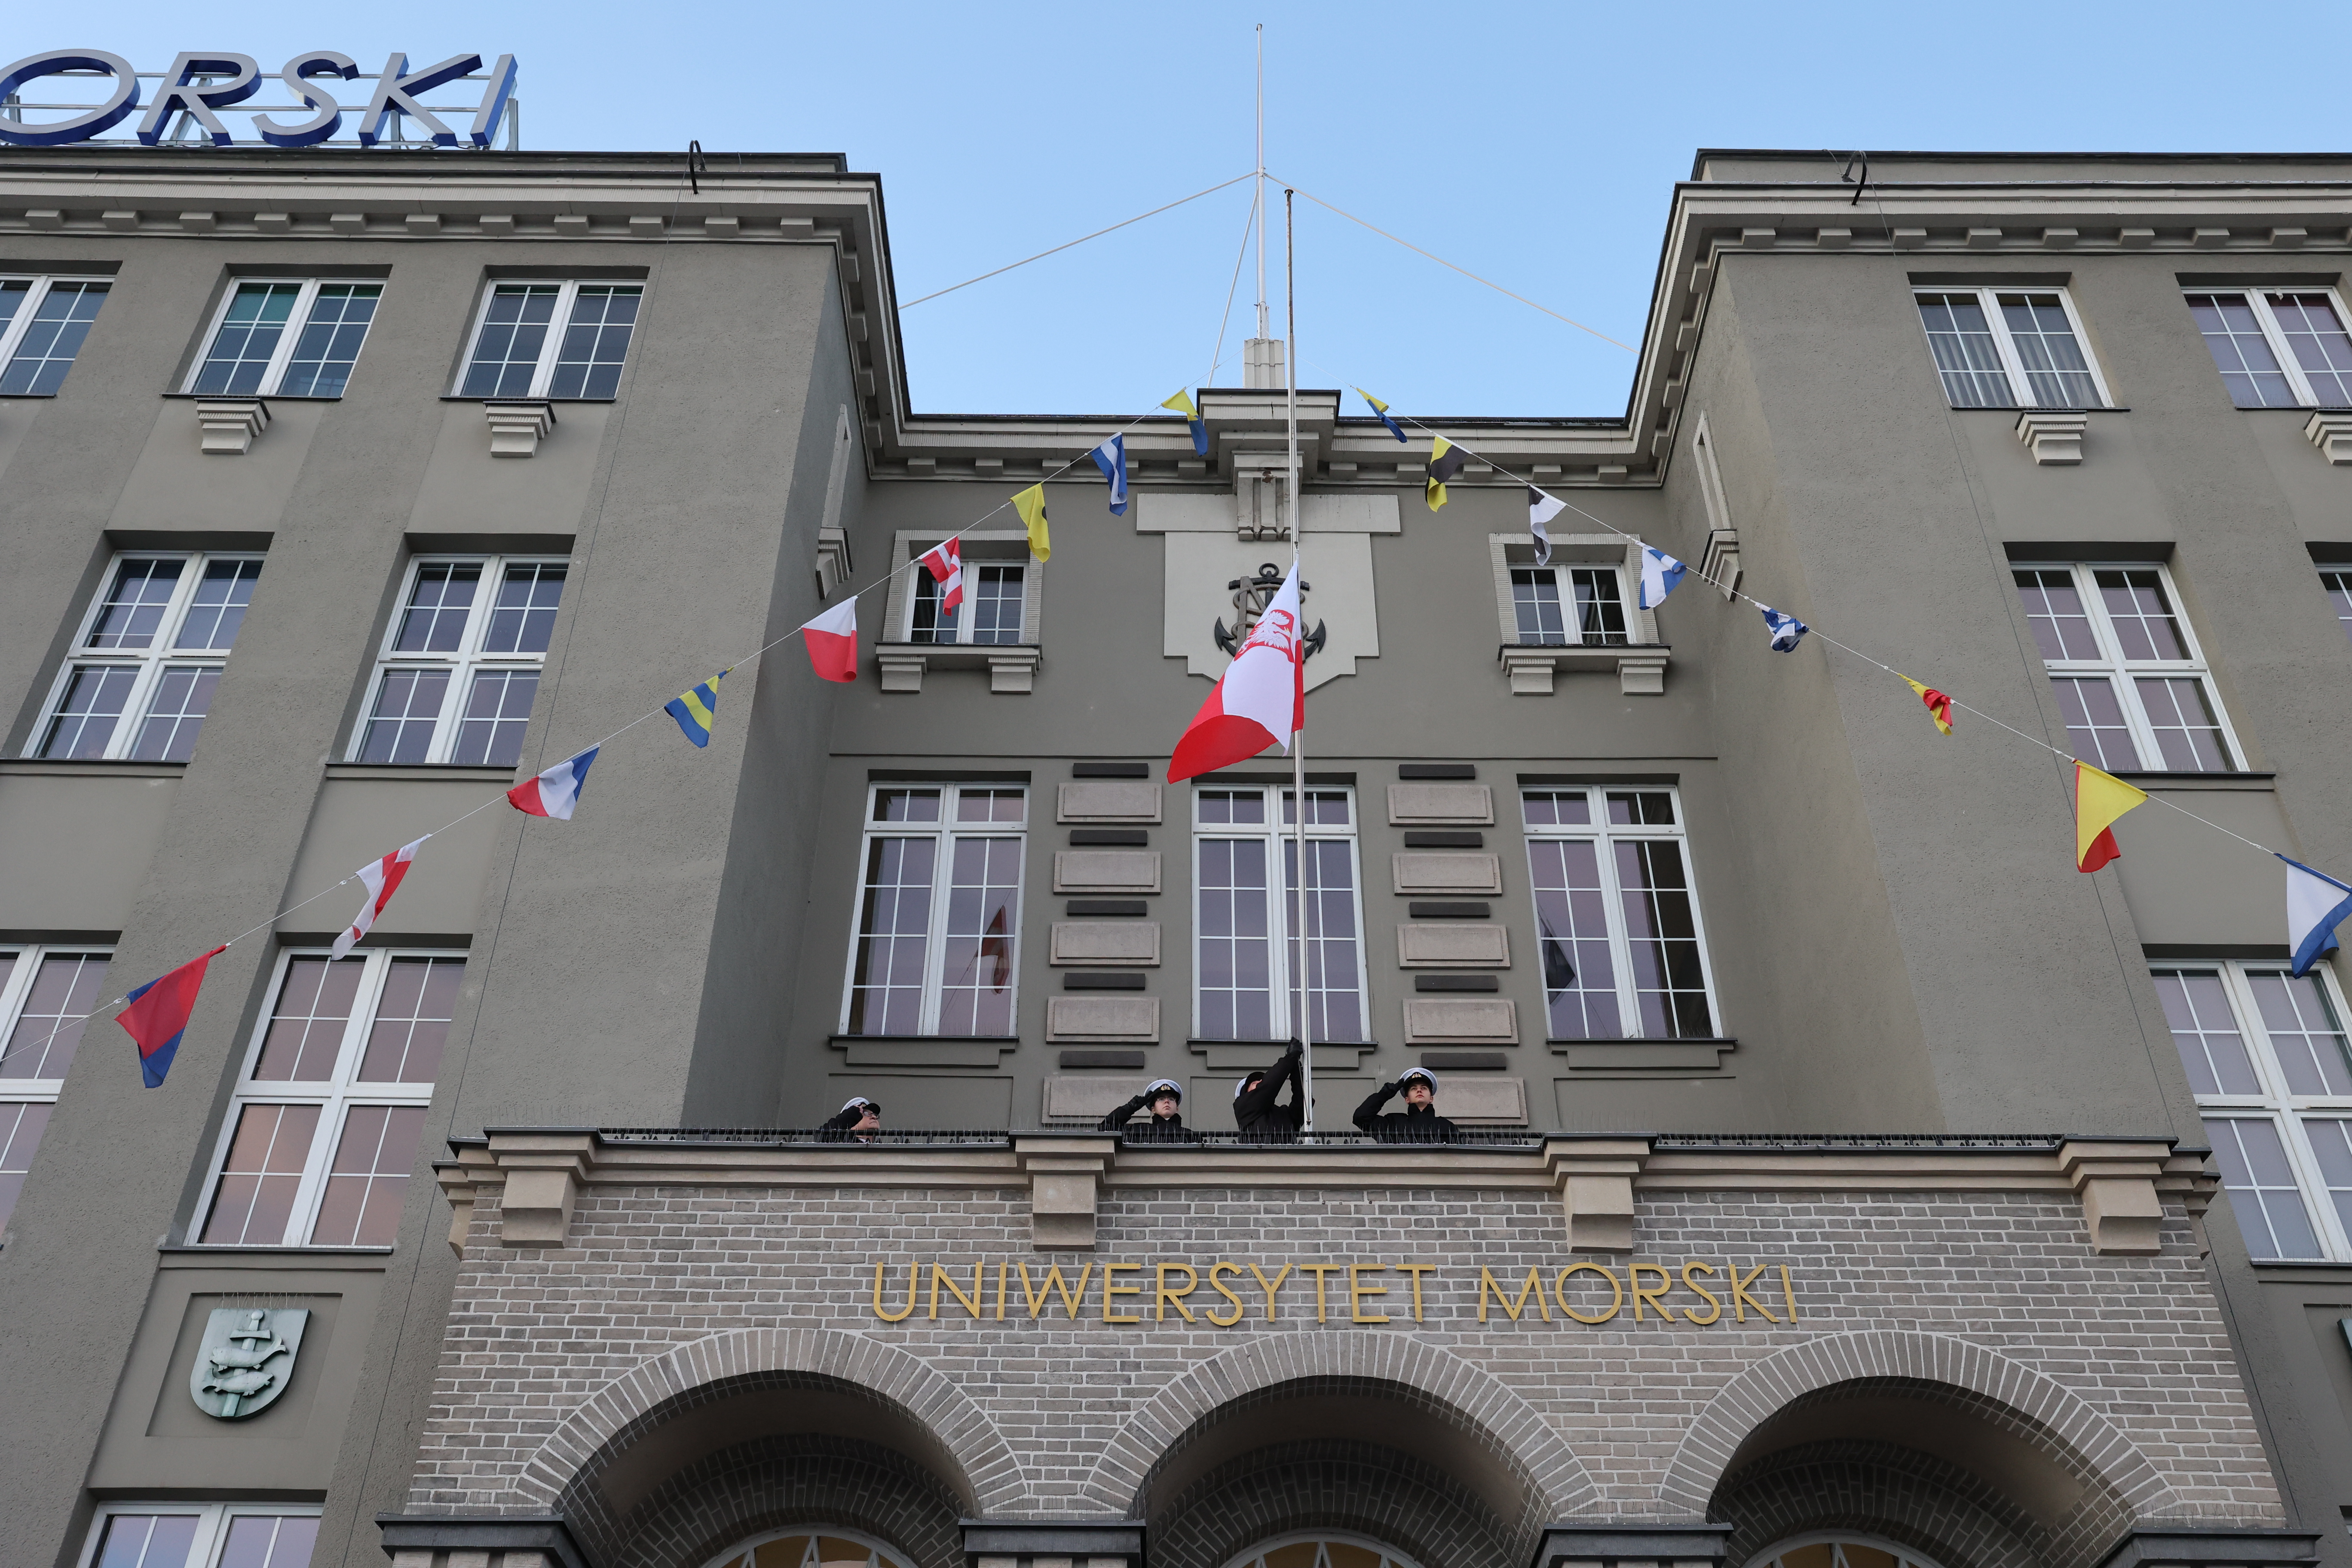 Podniesienie bandery na gmachu budynku Uniwersytetu Morskiego. Poczet sztandarowy wciąga flagę na maszt // fot. UMG